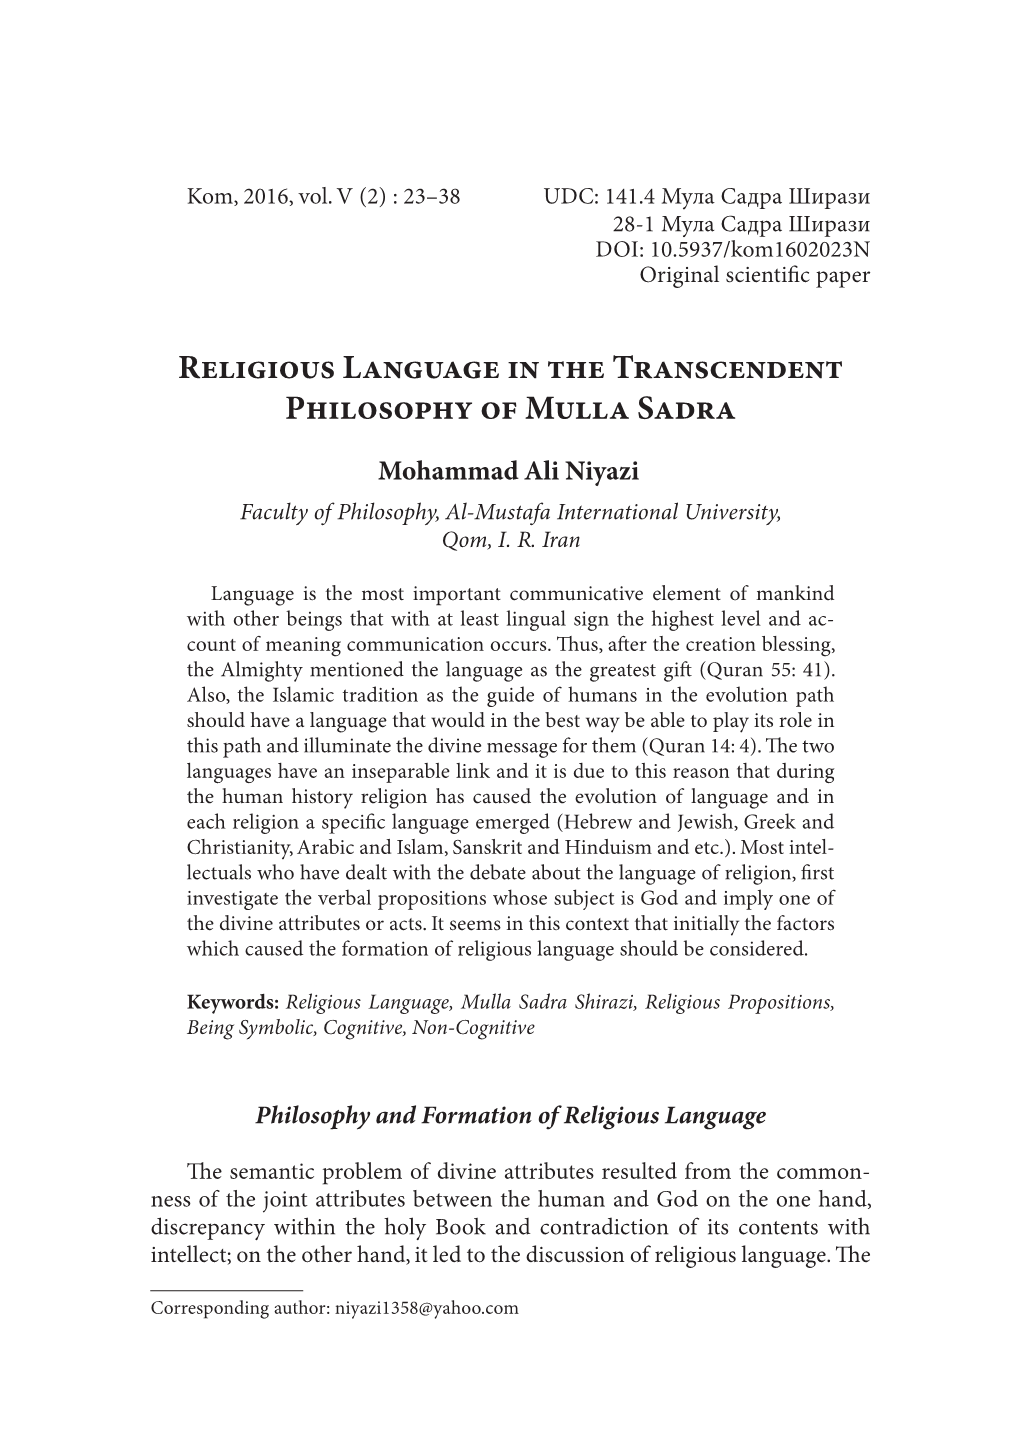 Religious Language in the Transcendent Philosophy of Mulla Sadra